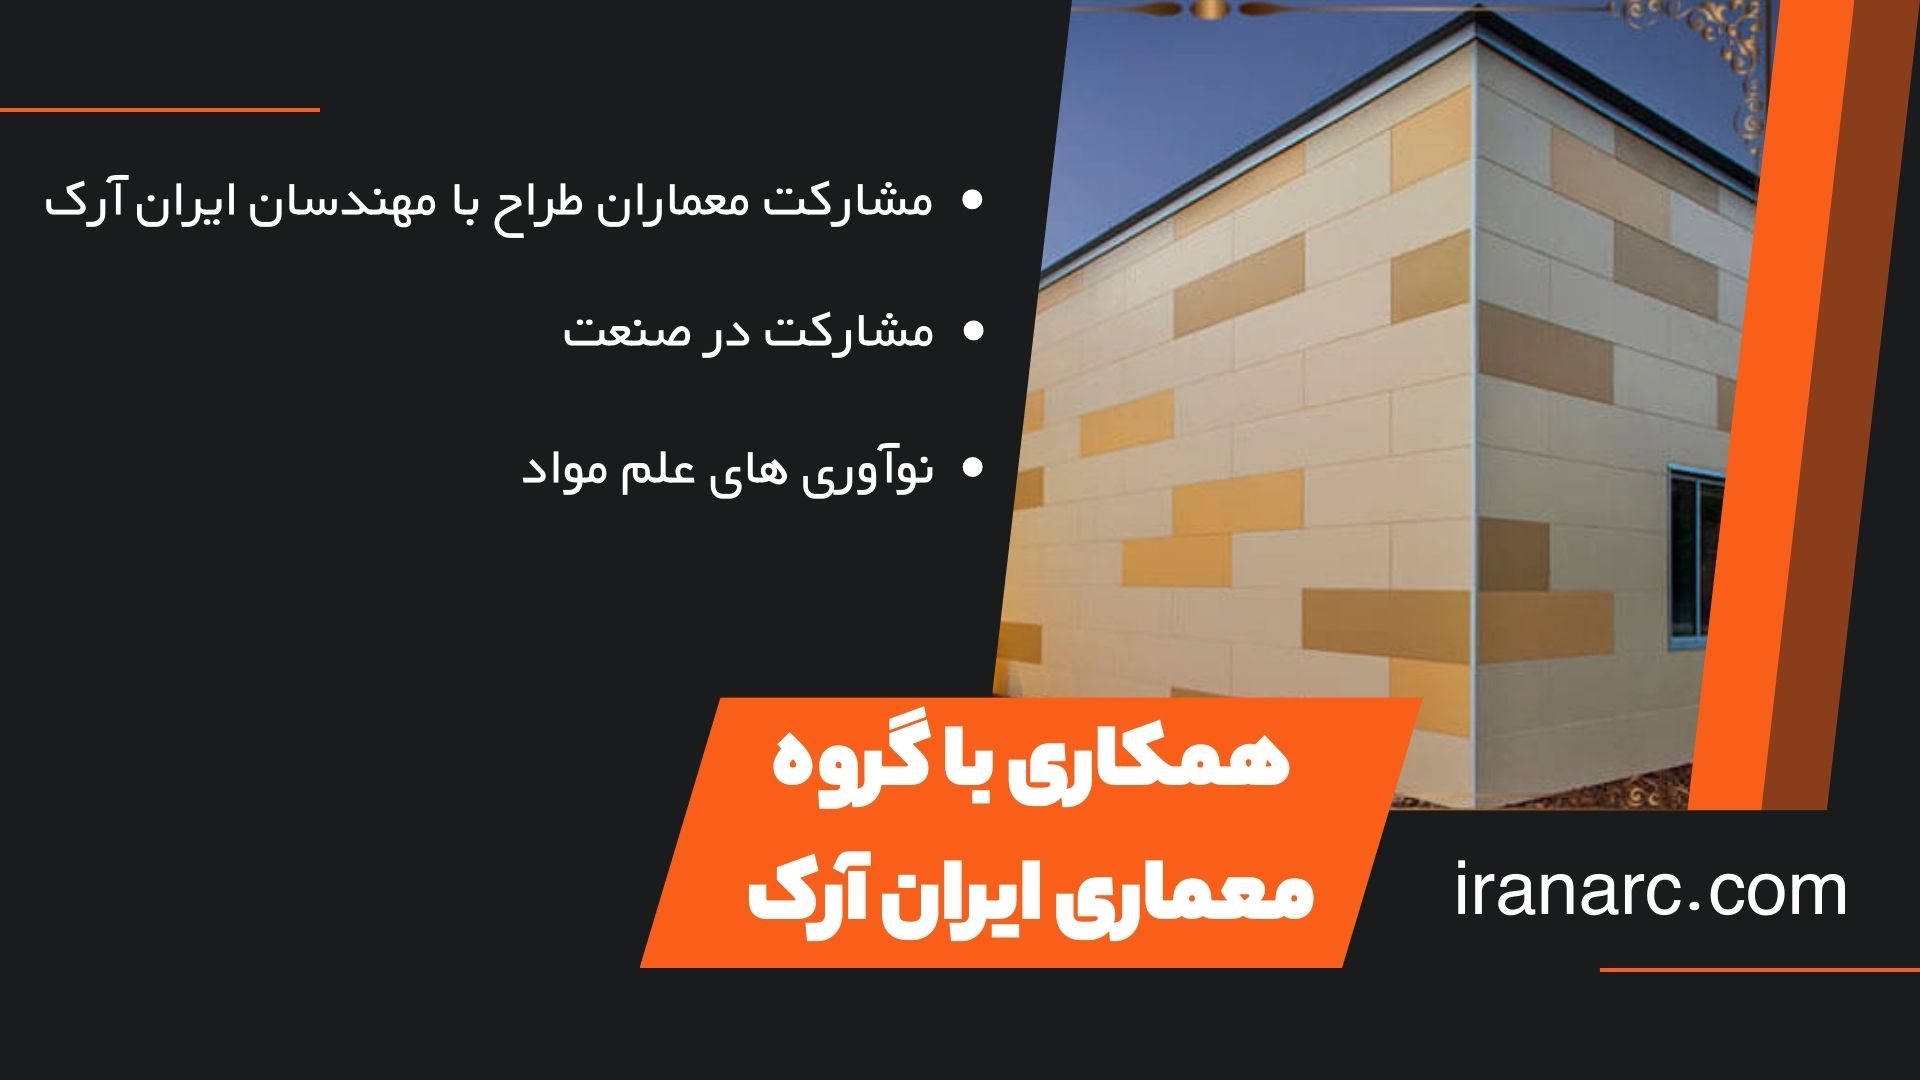 همکاری با گروه معماری ایران آرک